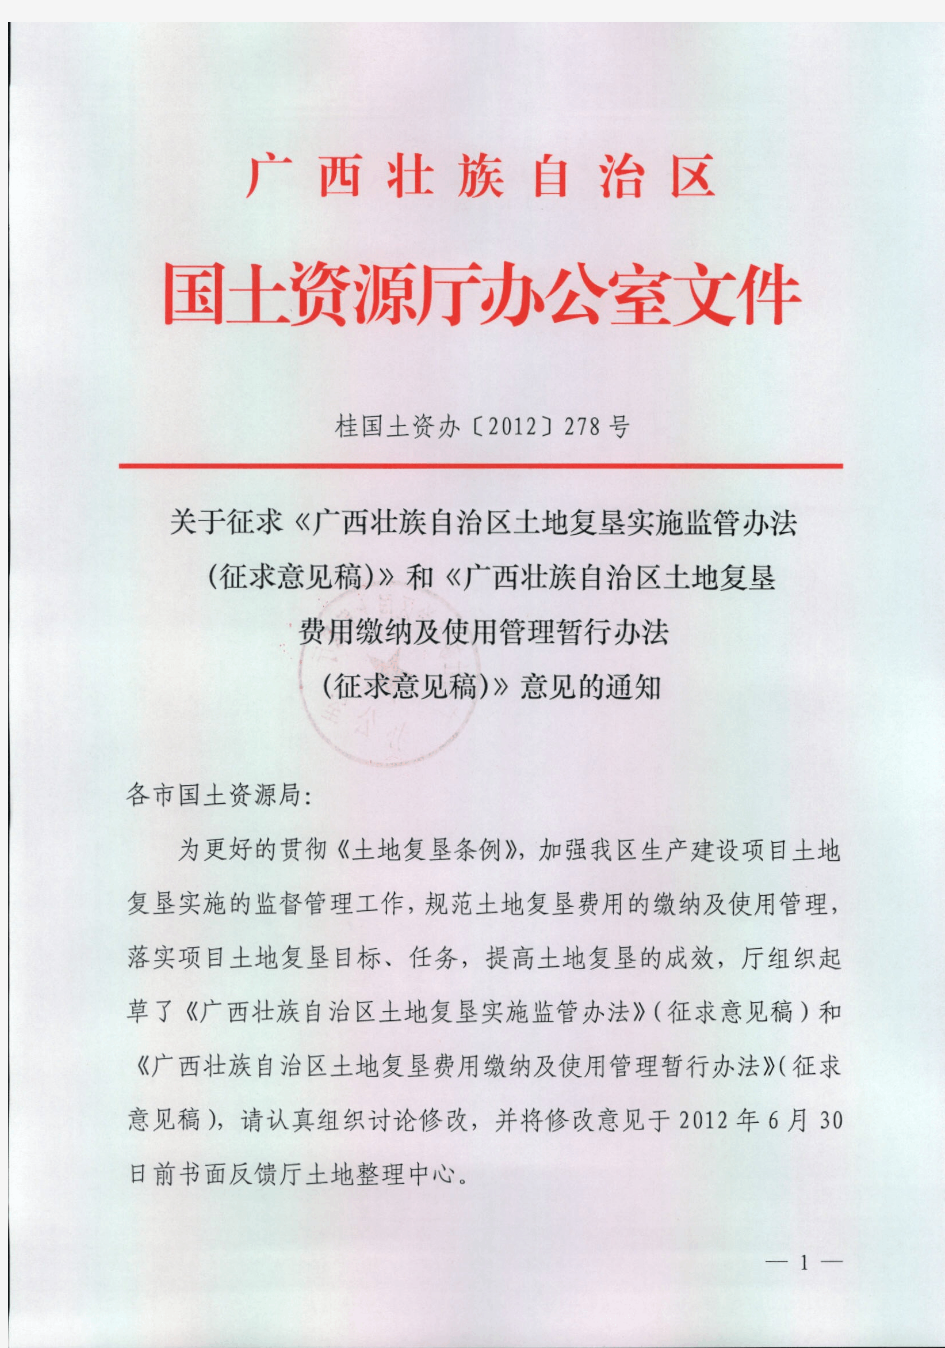 桂国土资办[2012]278号关于征求《广西壮族自治区土地复垦实施监管办法(征求意见稿)》和《广西壮族自治区土